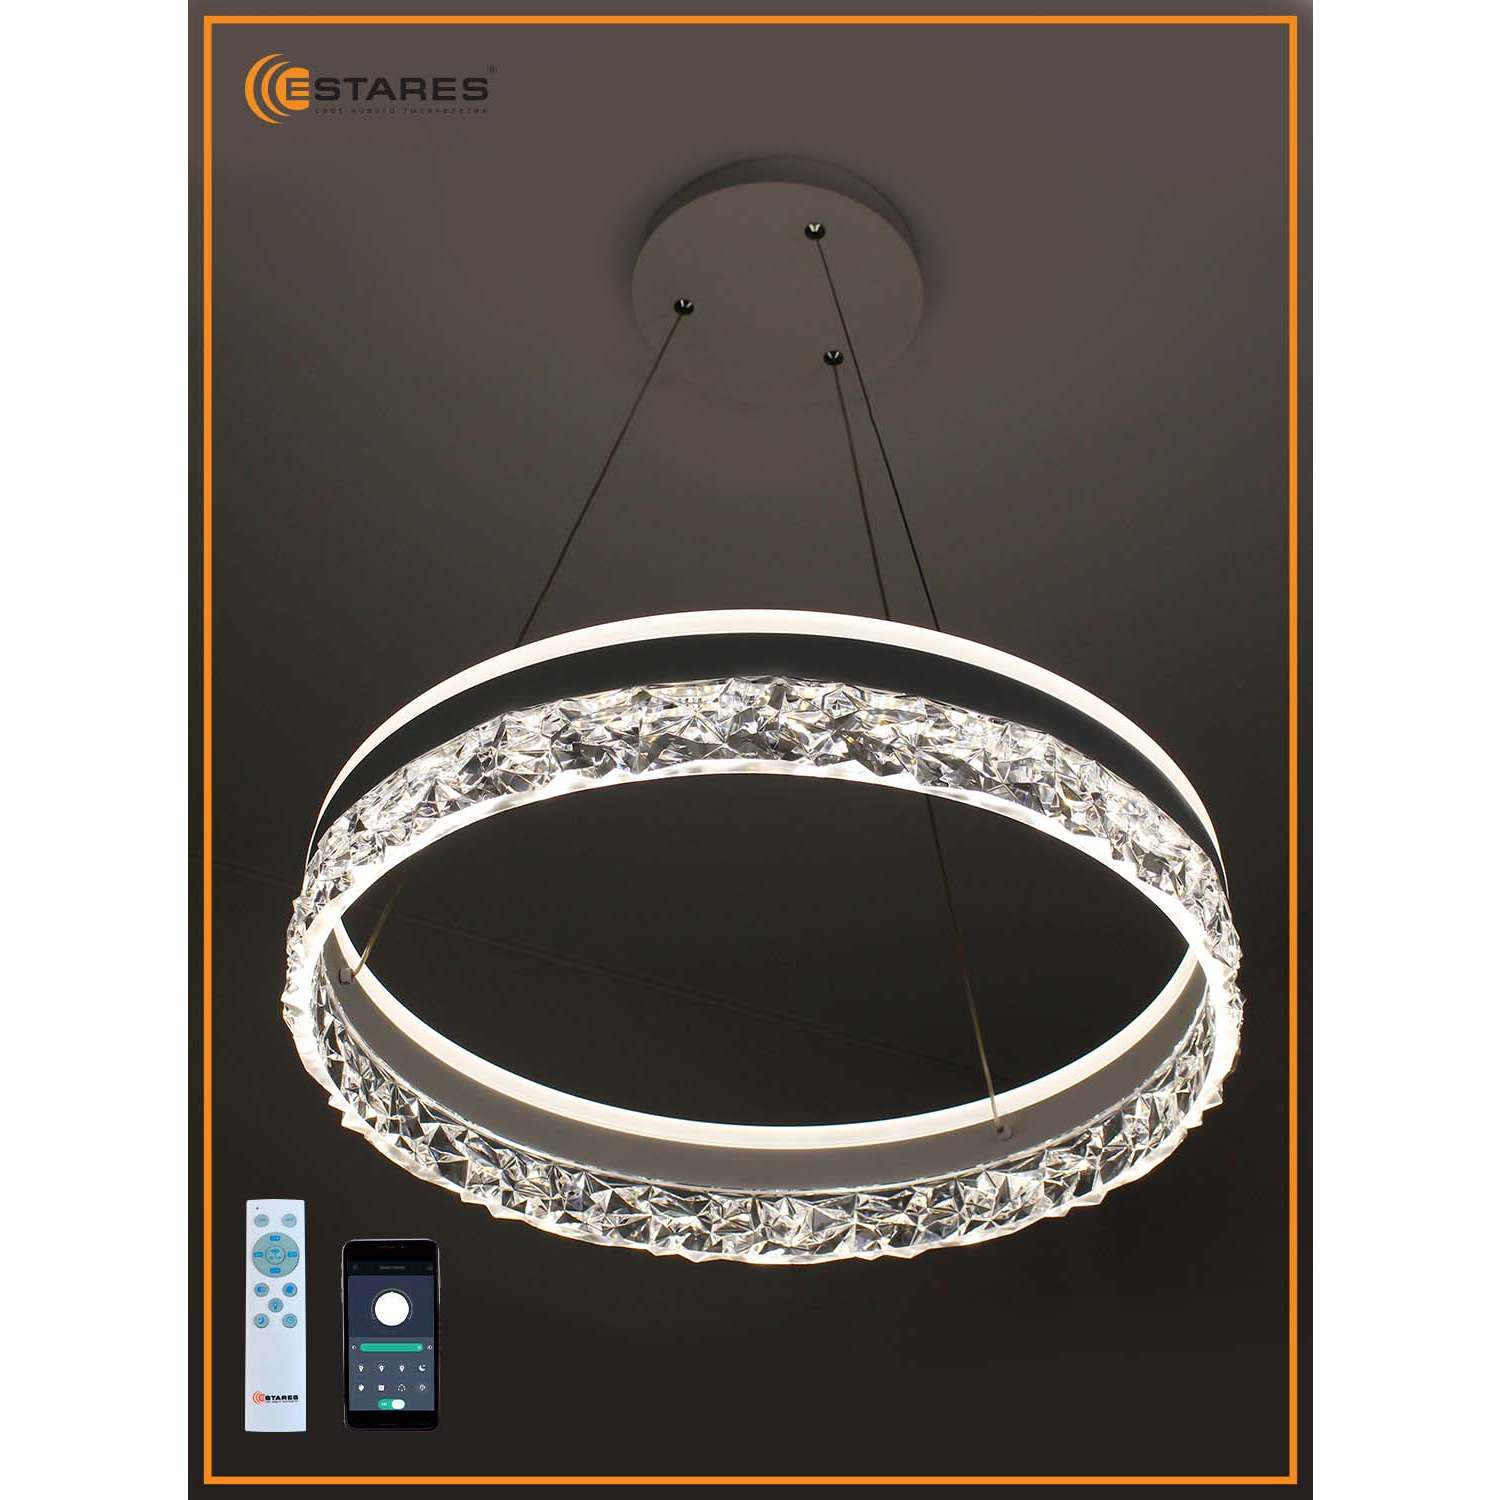 Светодиодная подвесная люстра Estares Управляемый светильник STELLA ice 80W R подвесной LED - фото 3